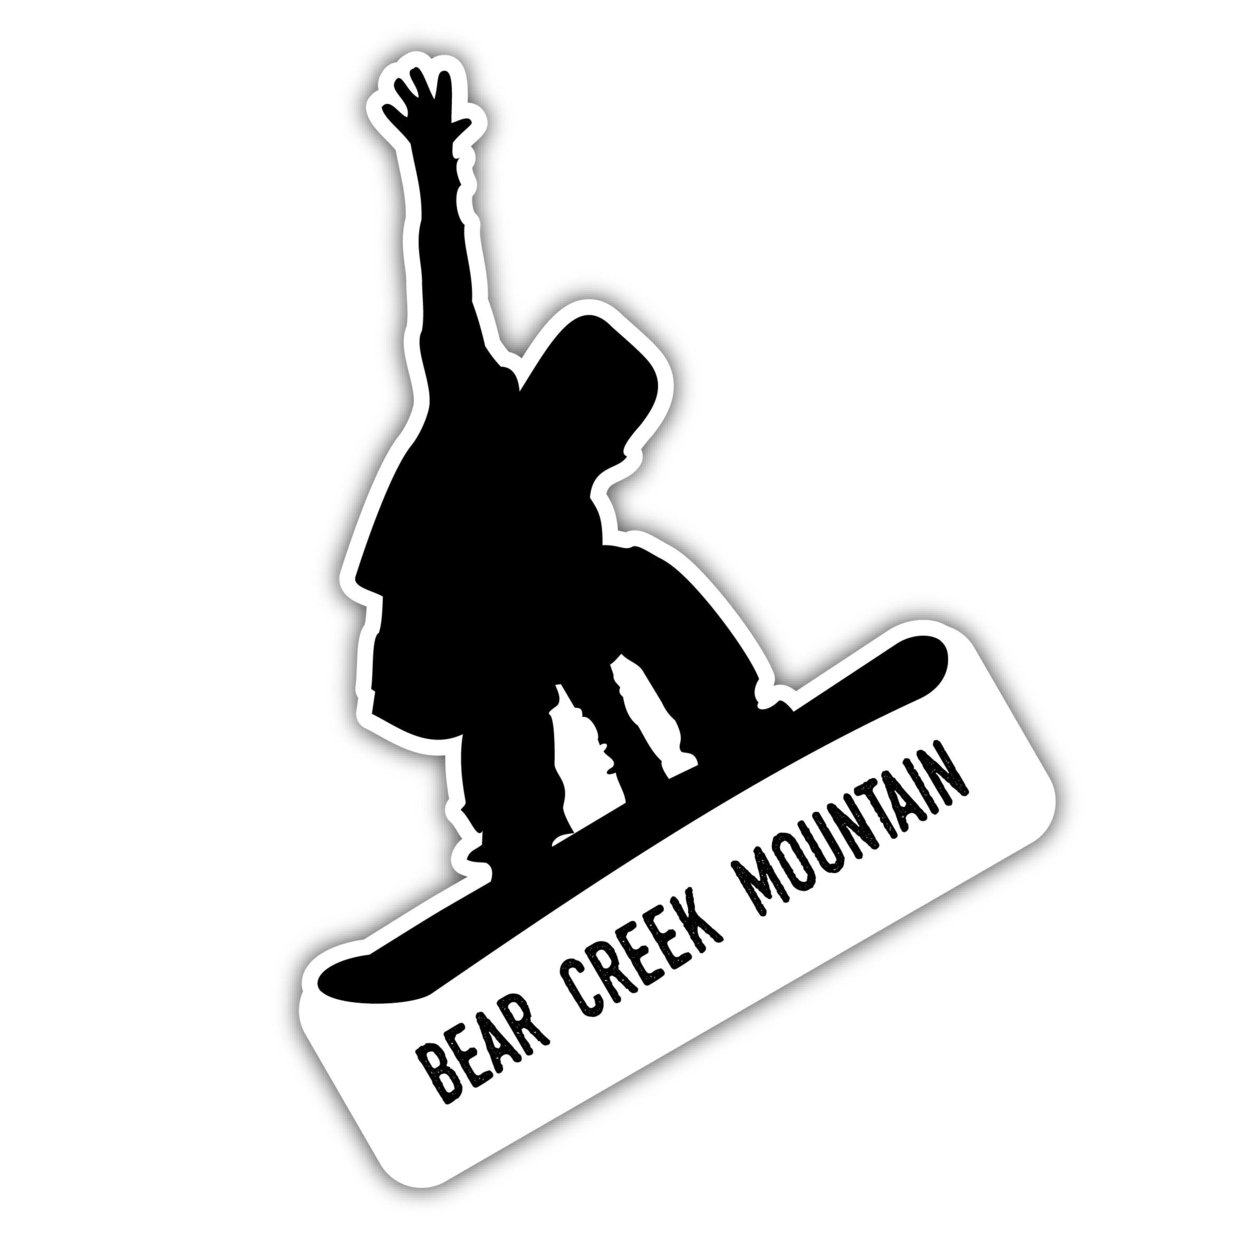 Bear Creek Mountain Pennsylvania Ski Adventures Souvenir 4 Inch Vinyl Decal Sticker Board Design